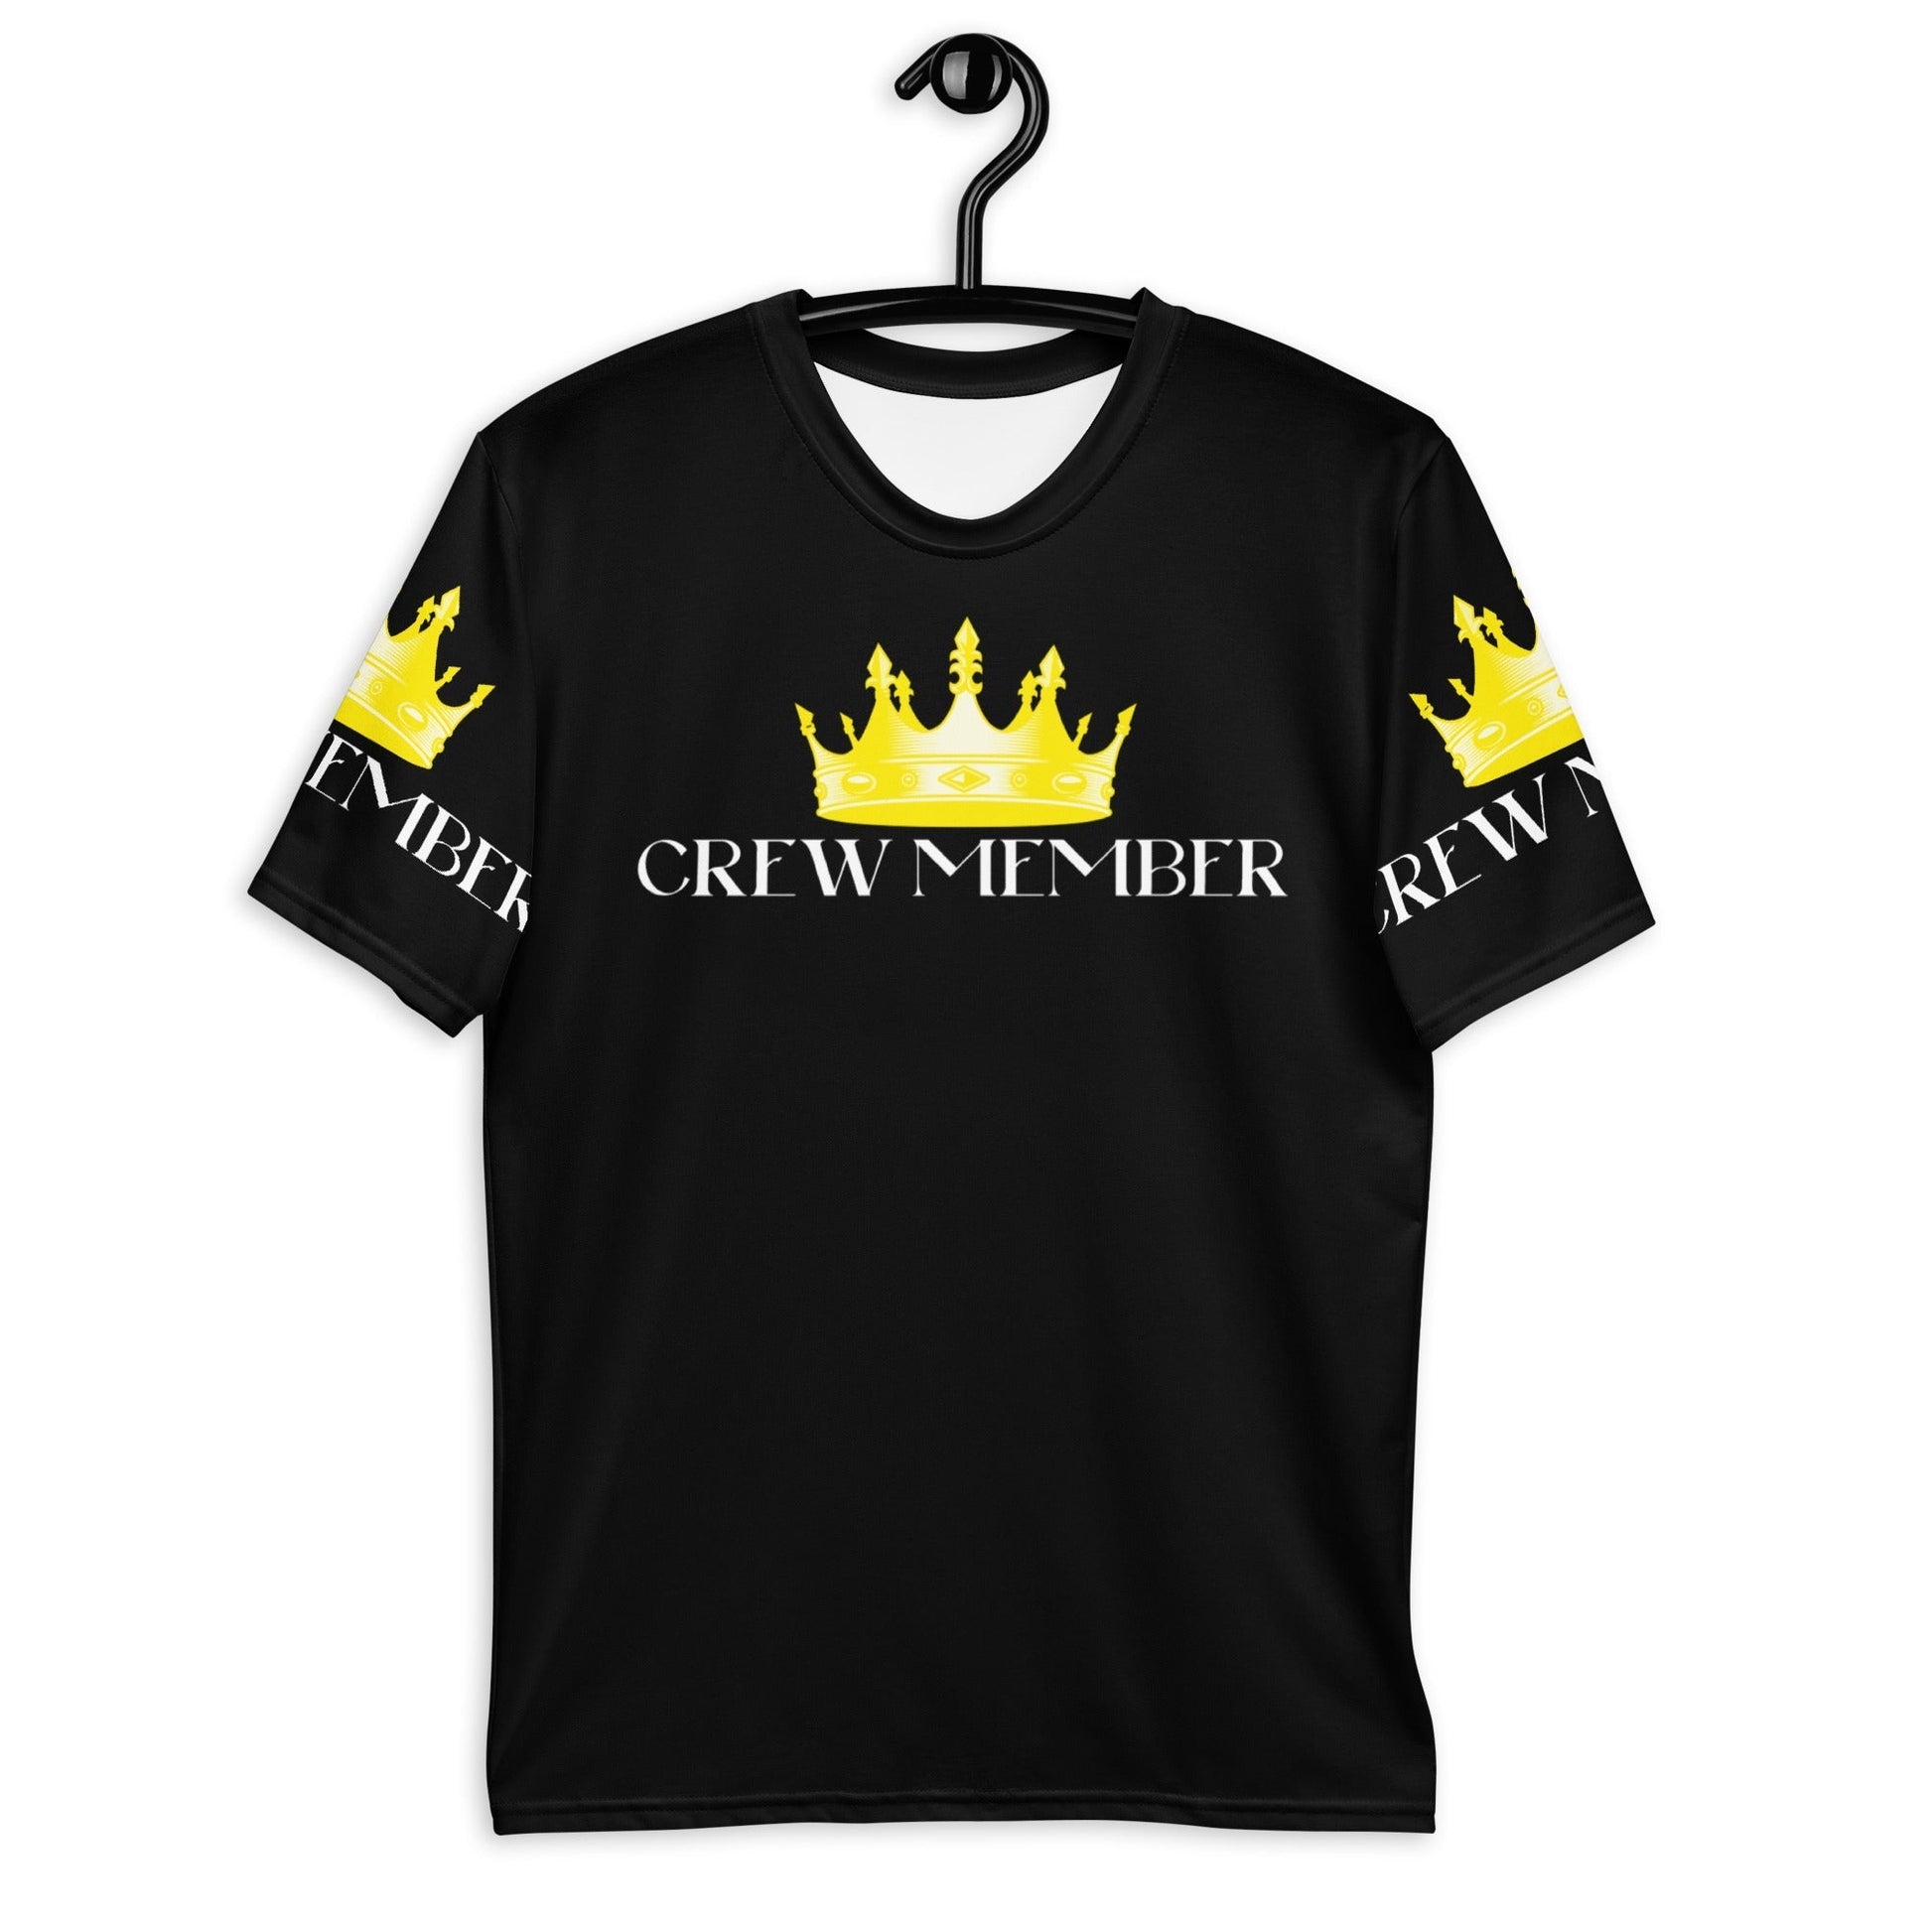 KING CREW Member Streetwear T-Shirt Herren - SCHWARZ - BLOODY-STREETS.DE Streetwear Herren und Damen Hoodies, T-Shirts, Pullis